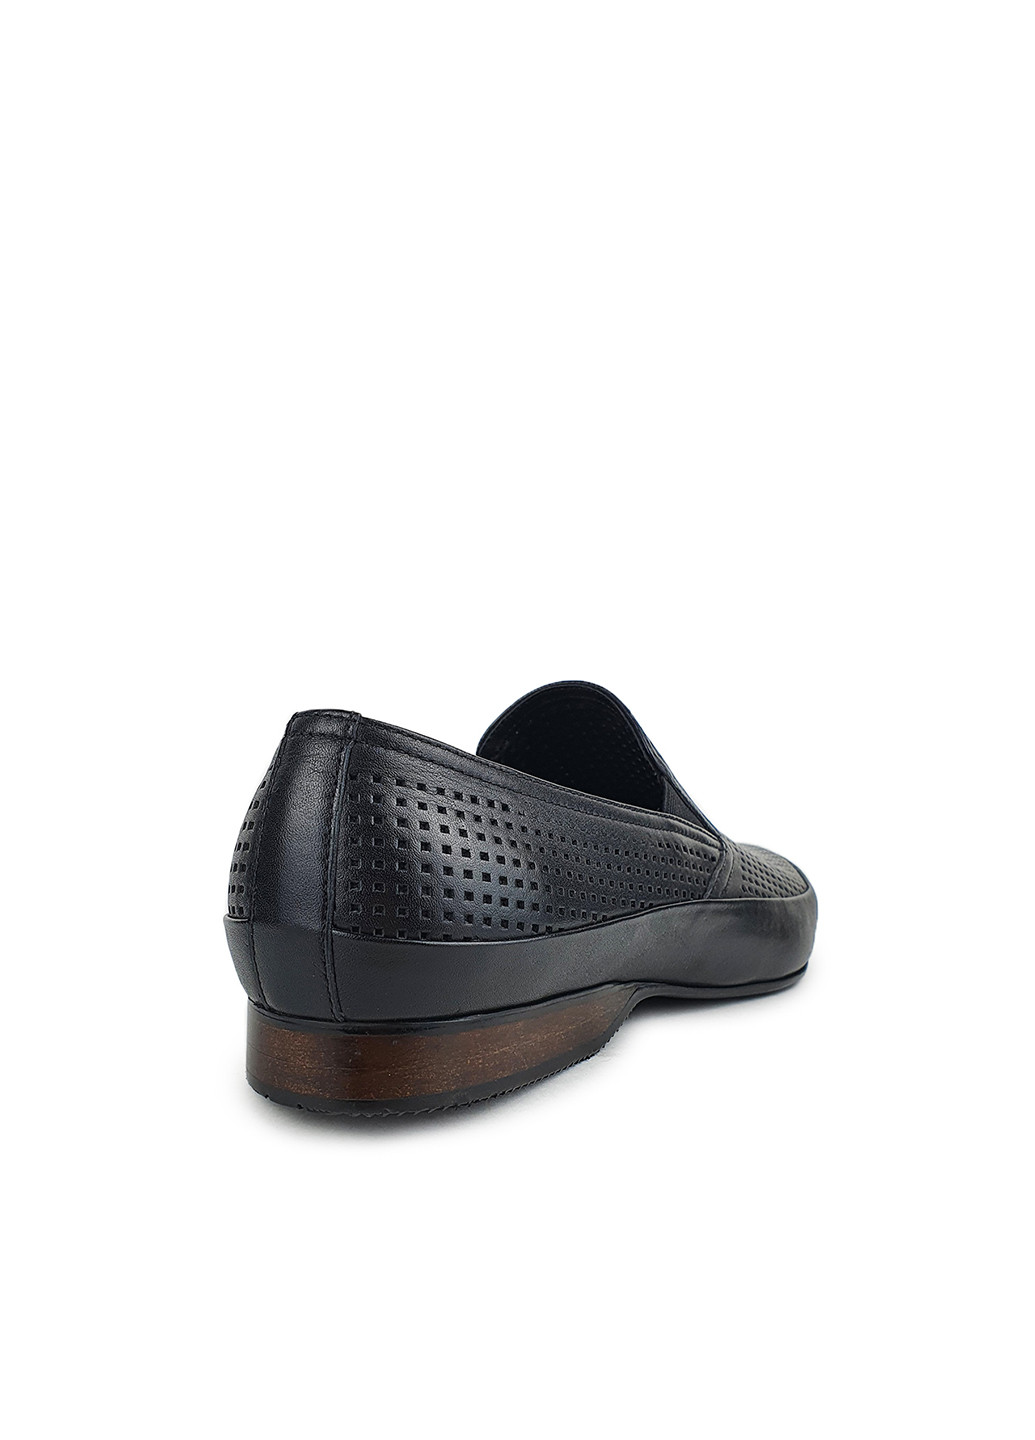 Літні туфлі чоловічі класичні з натуральної шкіри чорні,,MP759-1-1чер кож,39 Cosottinni (274376096)